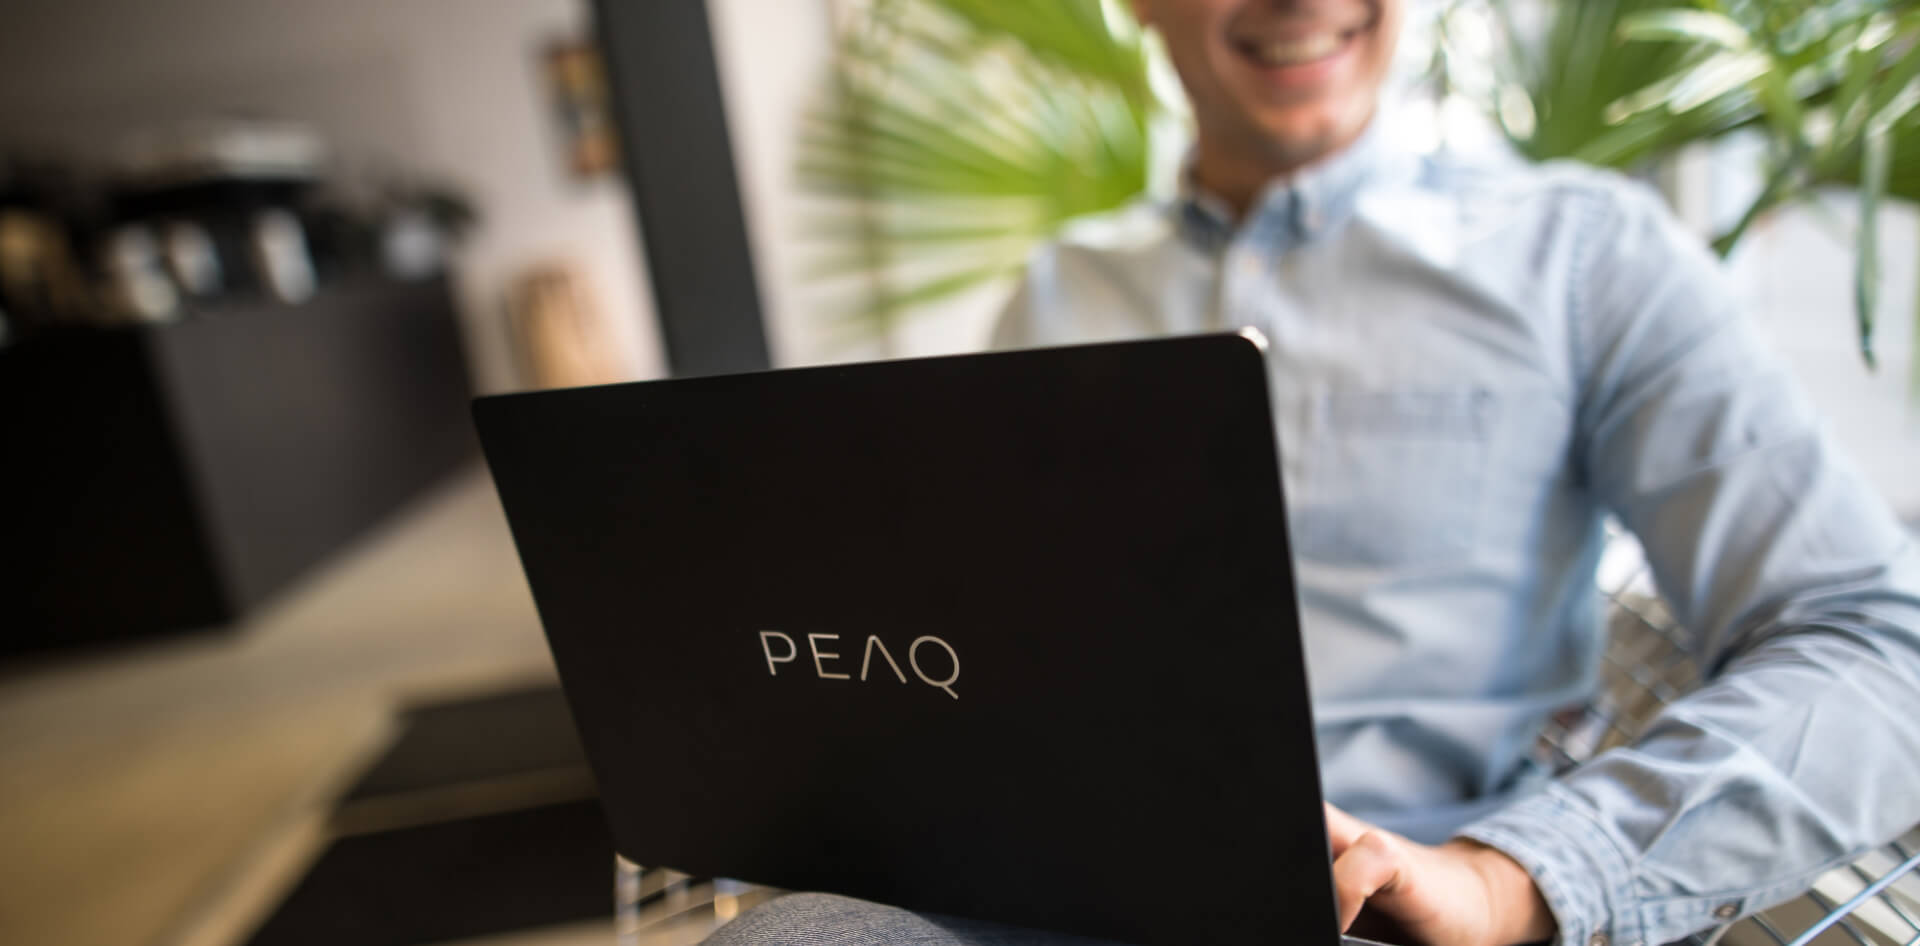 Młody mężczyzna z laptopem PEAQ na kolanach, śmieje się, siedzi w biurze lub kawiarni, zbliżenie